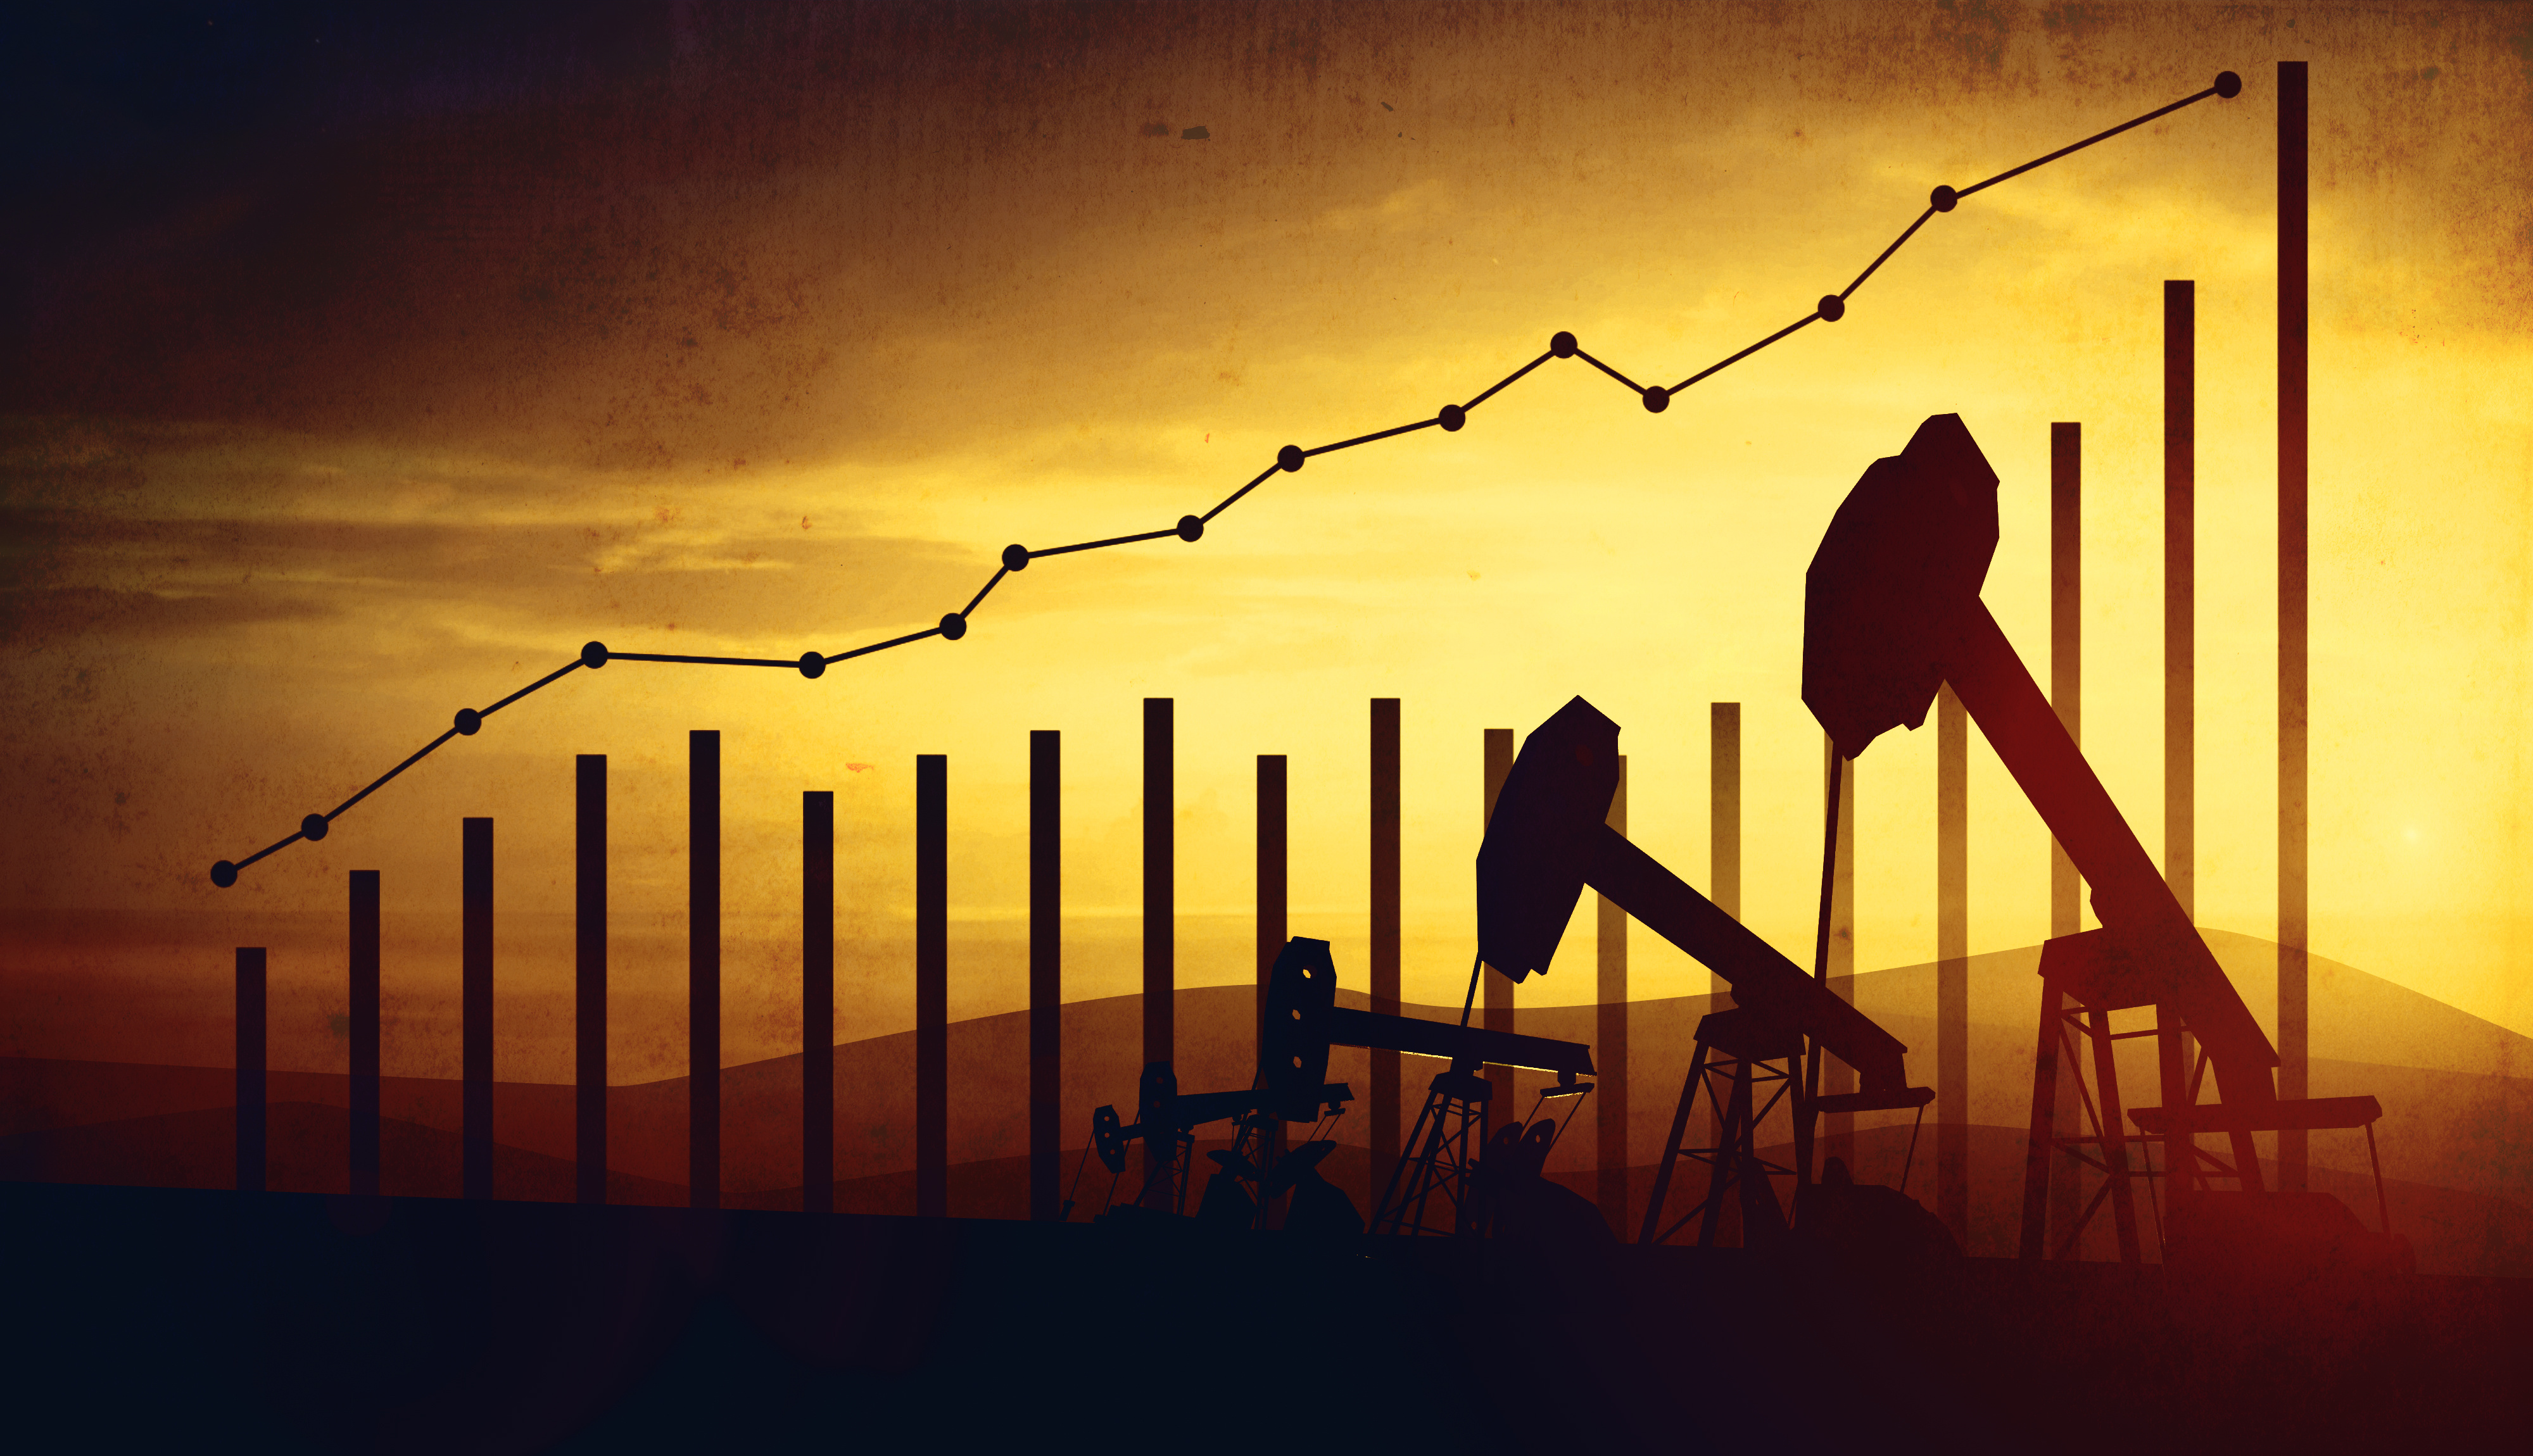 Une image de graphiques à points et à barres illustrant la hausse des prix du pétrole se superpose à une image représentant des tours de forage.